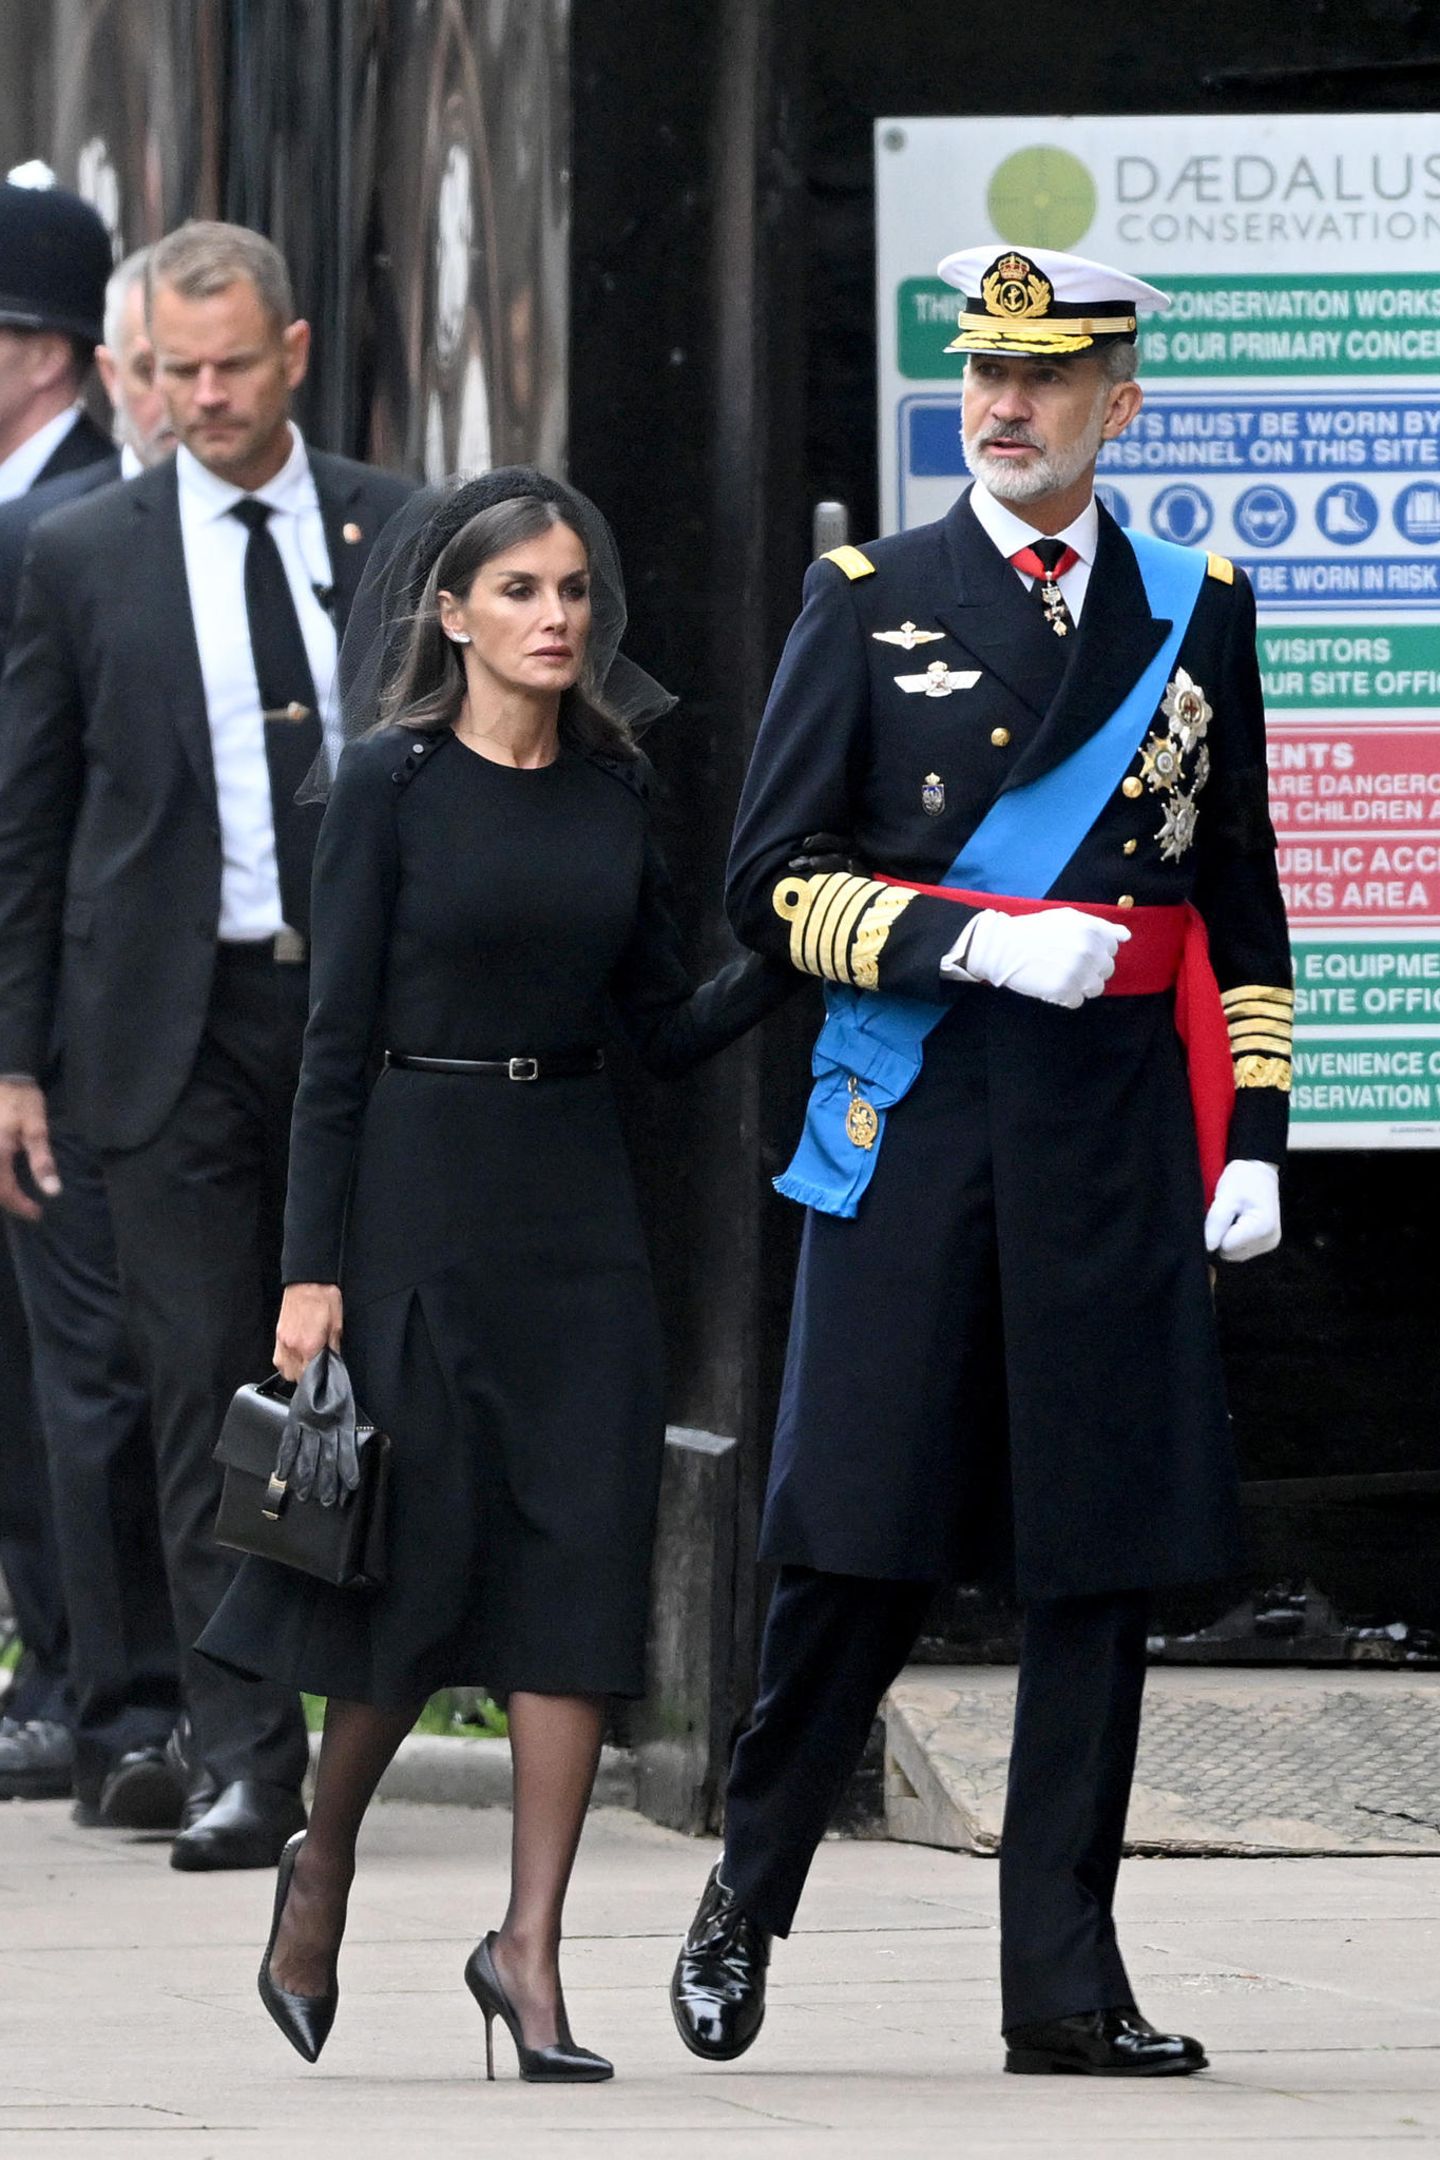 Königin Letizia von Spanien wählt ein schwarzes Kleid mit Taillengürtel von Carolina Herrera. An ihrem schwarzen Haarreif steckt ein Netzschleier. In der Hand hält sie neben ihren schwarzen Lederhandschuhen auch eine Handtasche von Giorgio Armani. 